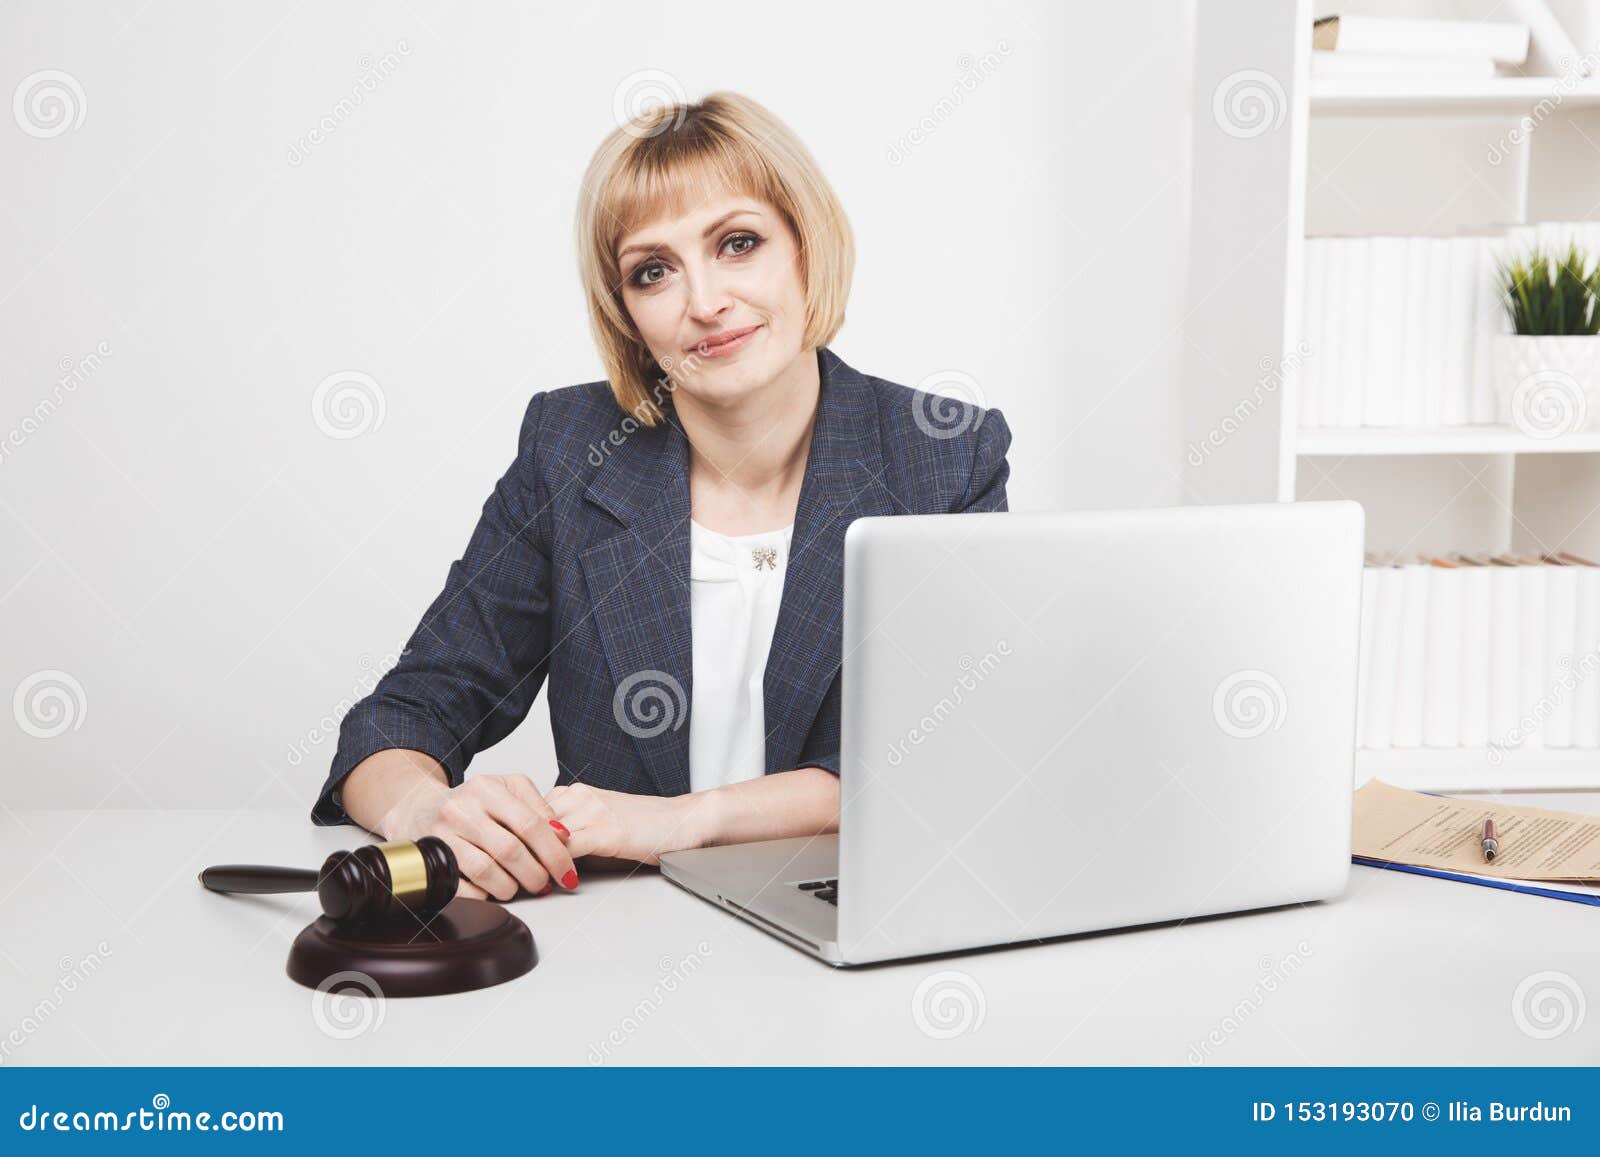 woman jurist working laptop in office .